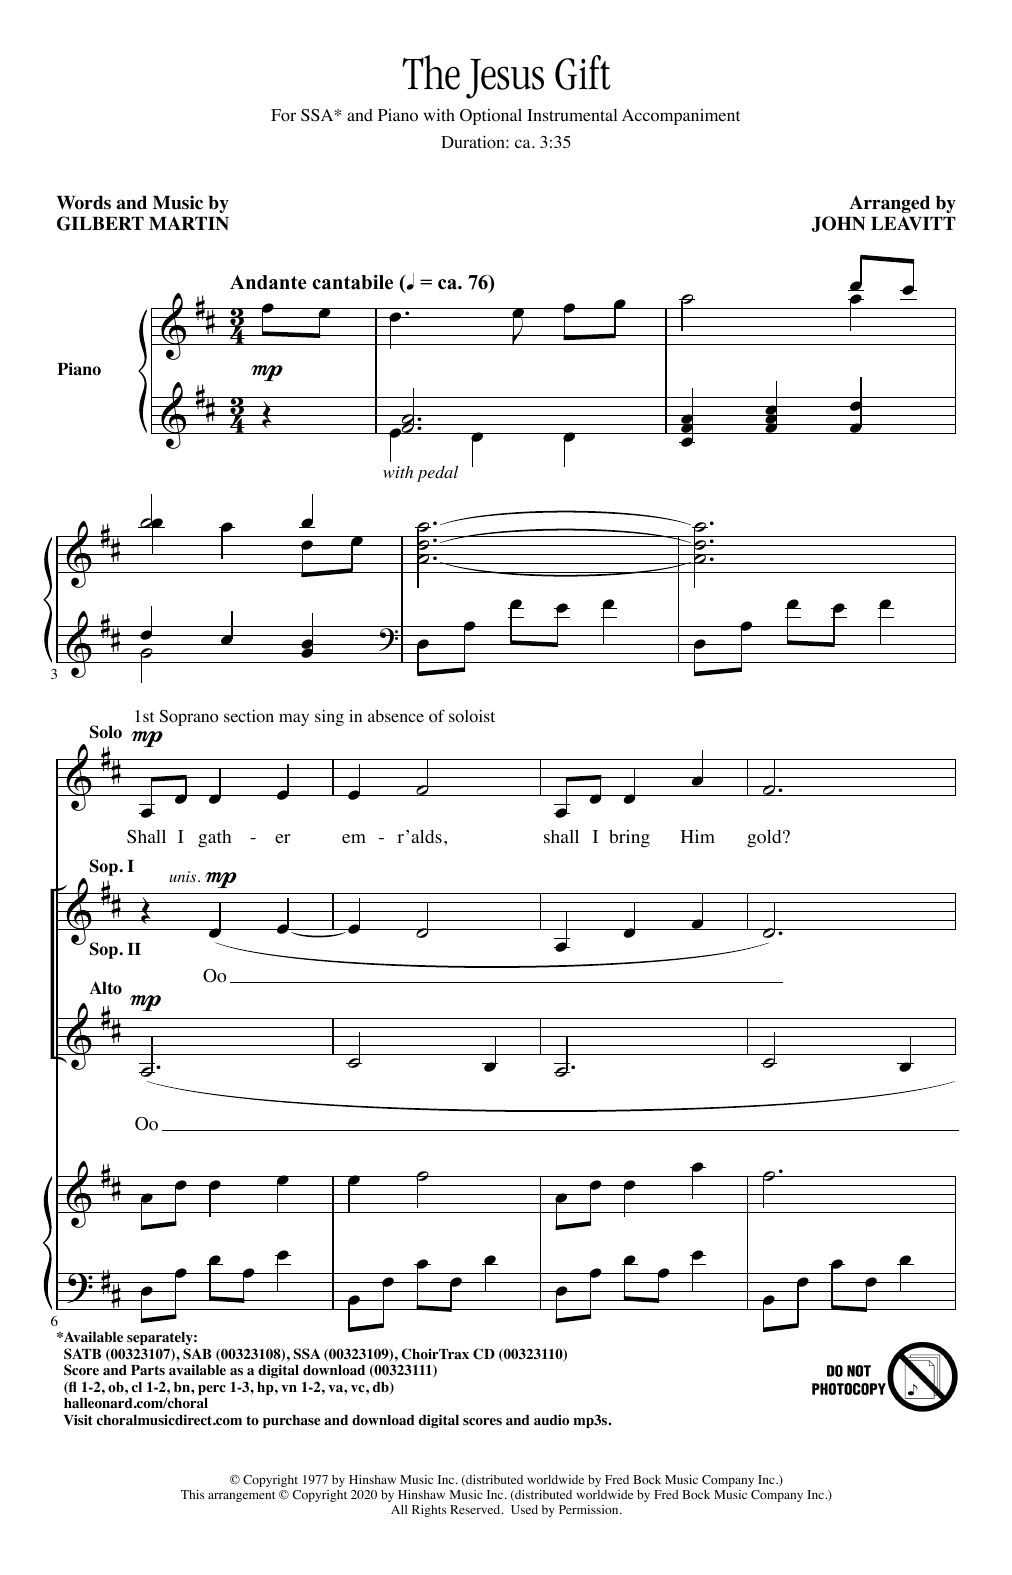 Gilbert Martin The Jesus Gift (arr. John Leavitt) sheet music notes and chords arranged for SSA Choir